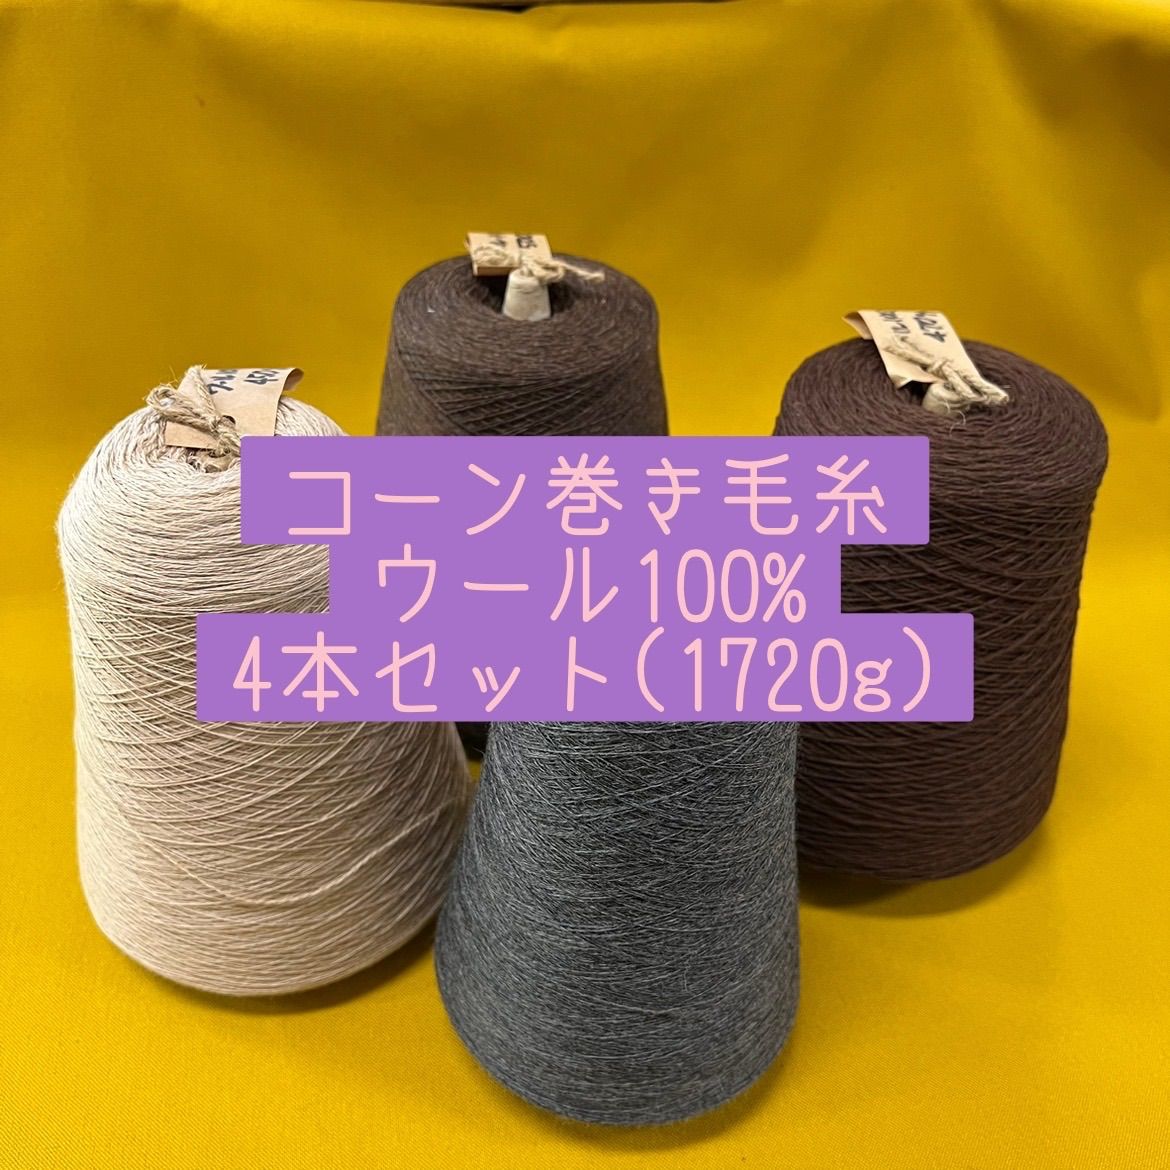 毛糸 コーン巻き毛糸ウール100%4本セット(1720g)No1 布地と毛糸のKIRE メルカリ